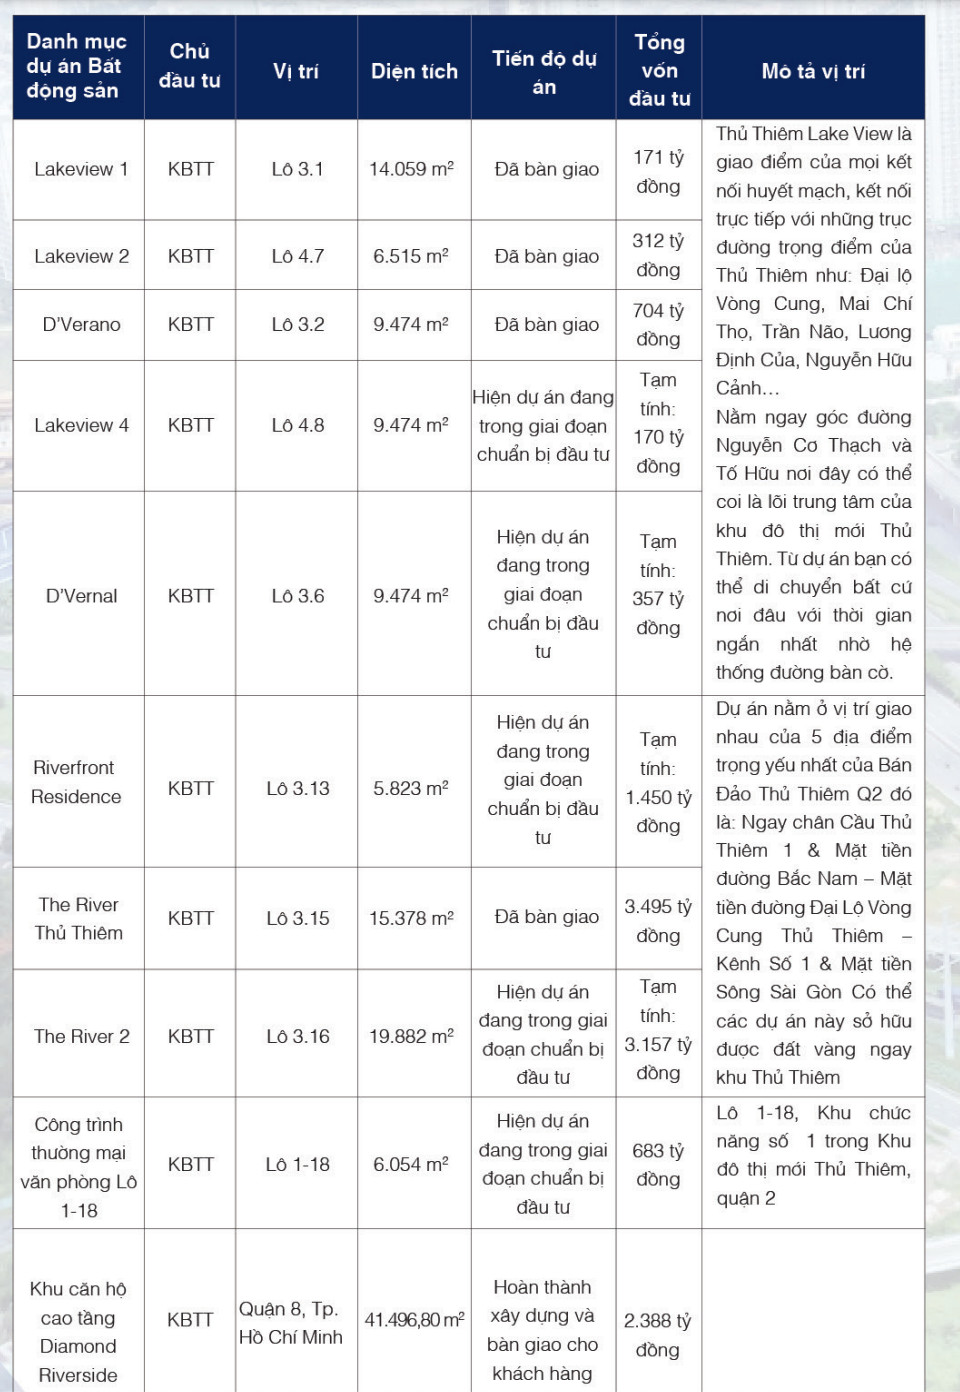 Danh sách các Dự án của Khu Bắc Thủ Thiêm tại Thủ Thiêm (Nguồn: CII)